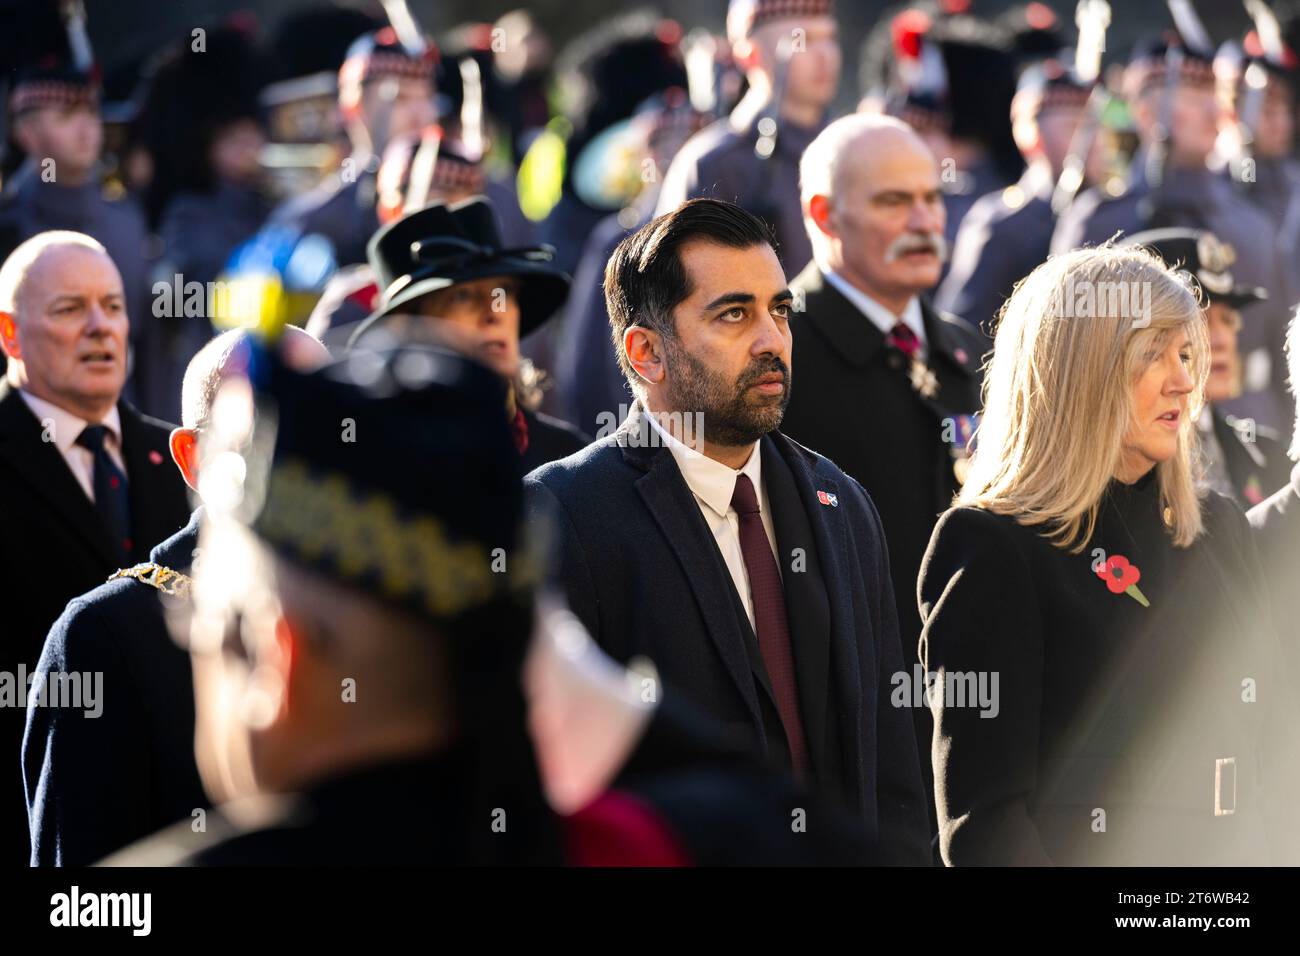 Der erste Minister Humza Yousaf nimmt an der Gedenkfeier am Sonntag in Edinburgh City Chambers auf der Royal Mile Teil. Quelle: Euan Cherry Stockfoto